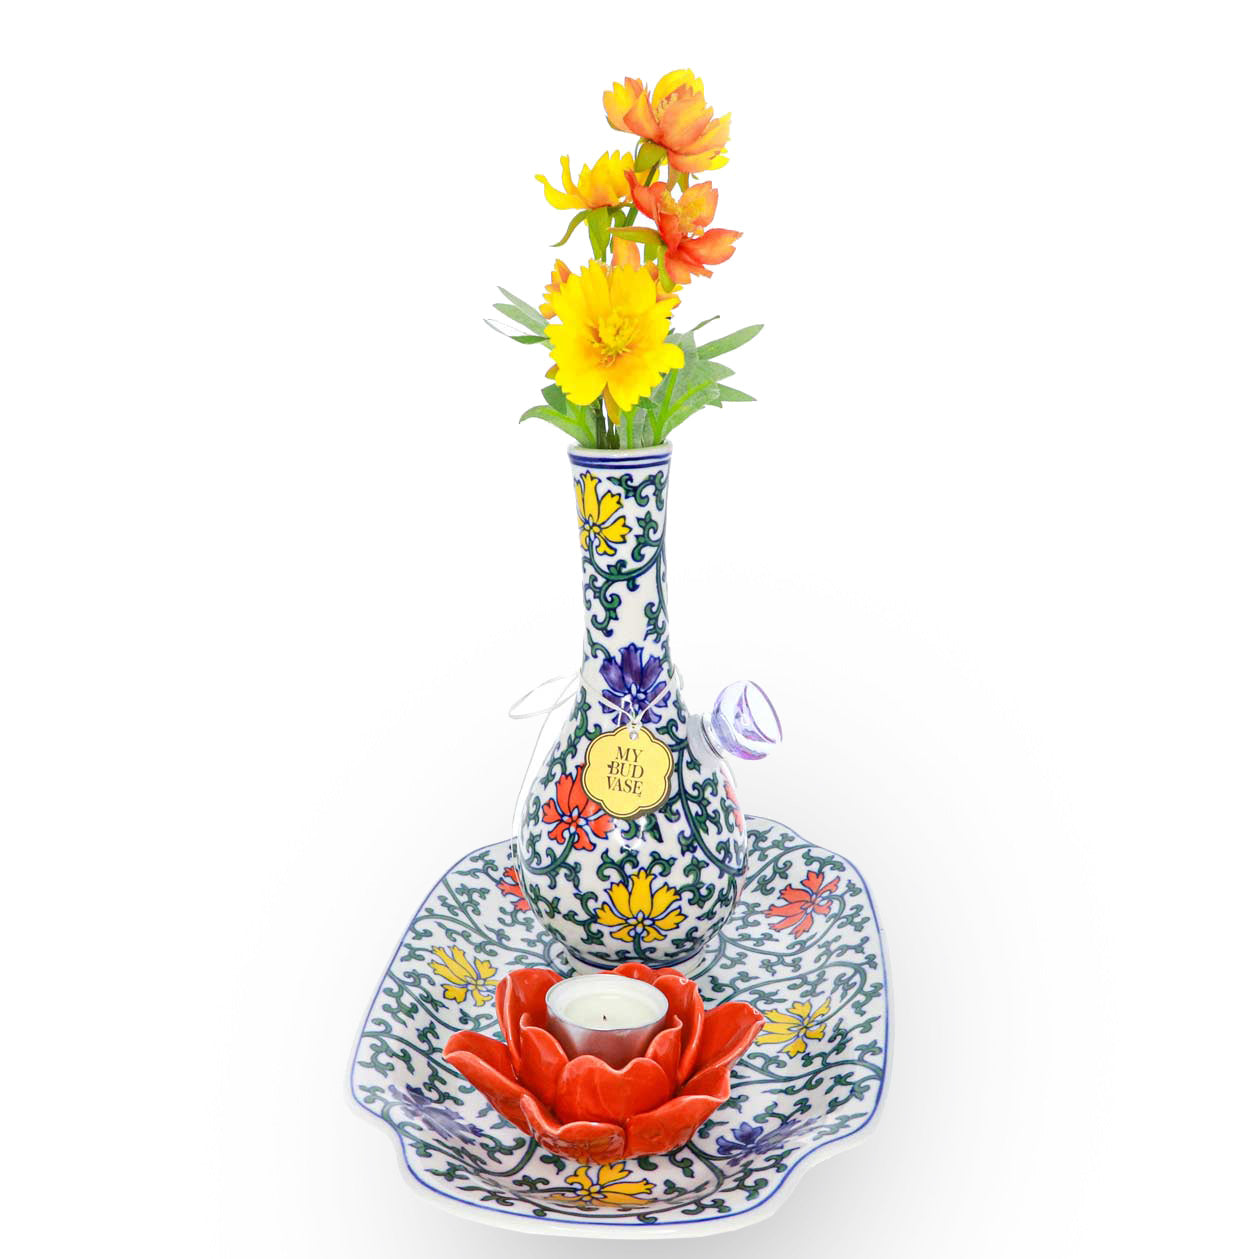 My Bud Vase - Lotus w/ Tray & Candle Holder